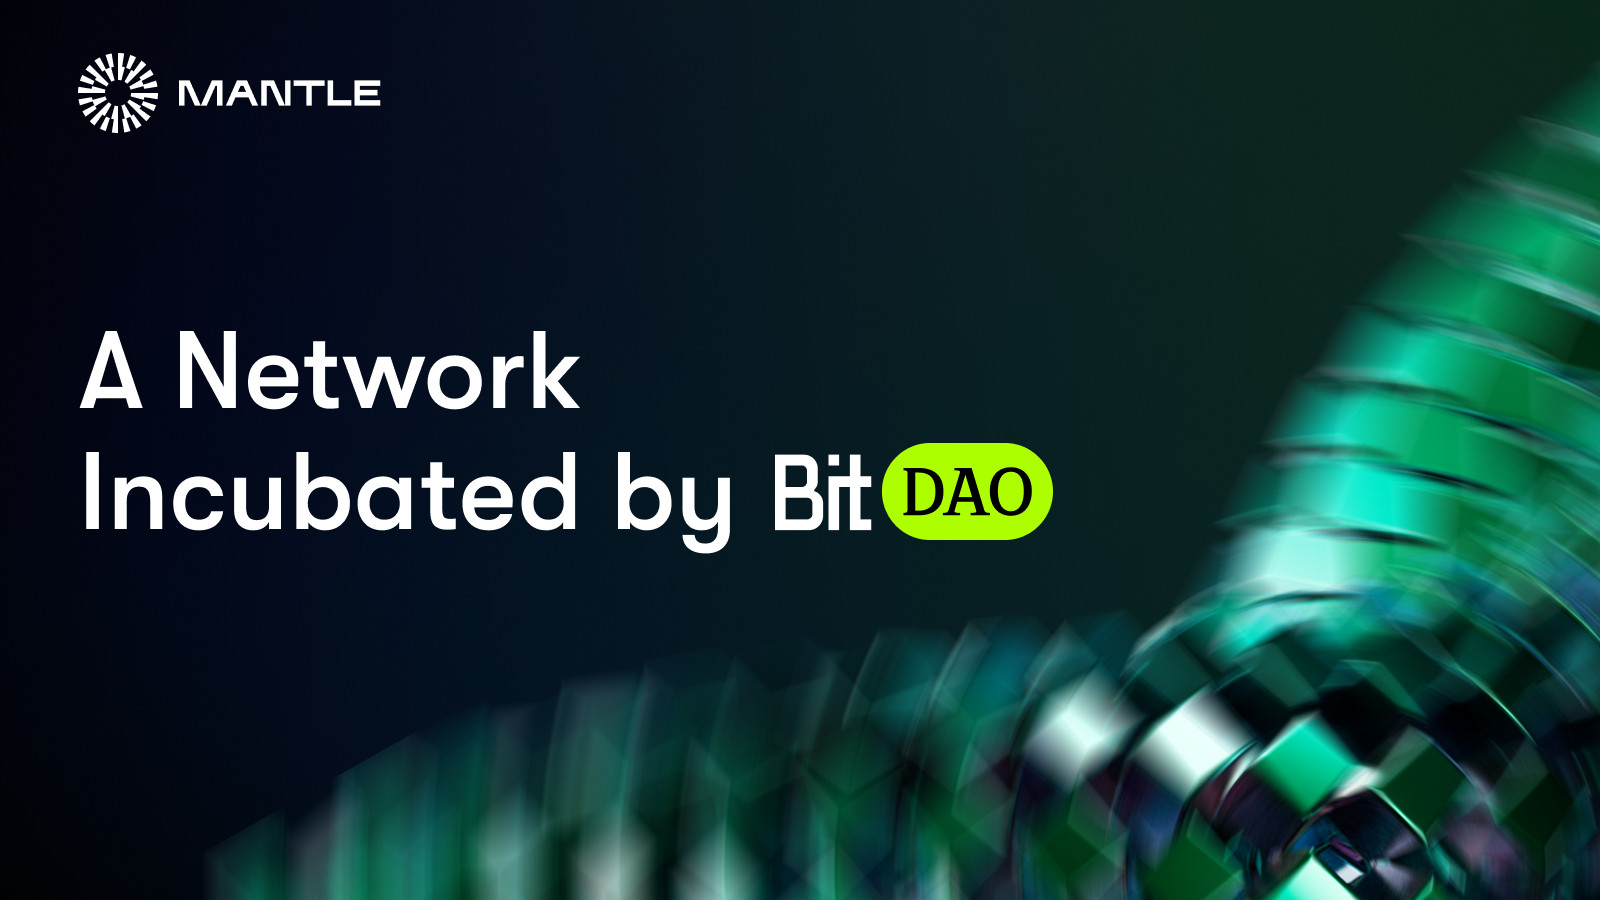 Tìm hiểu về Mantle Network - Layer 2 mới của BitDao